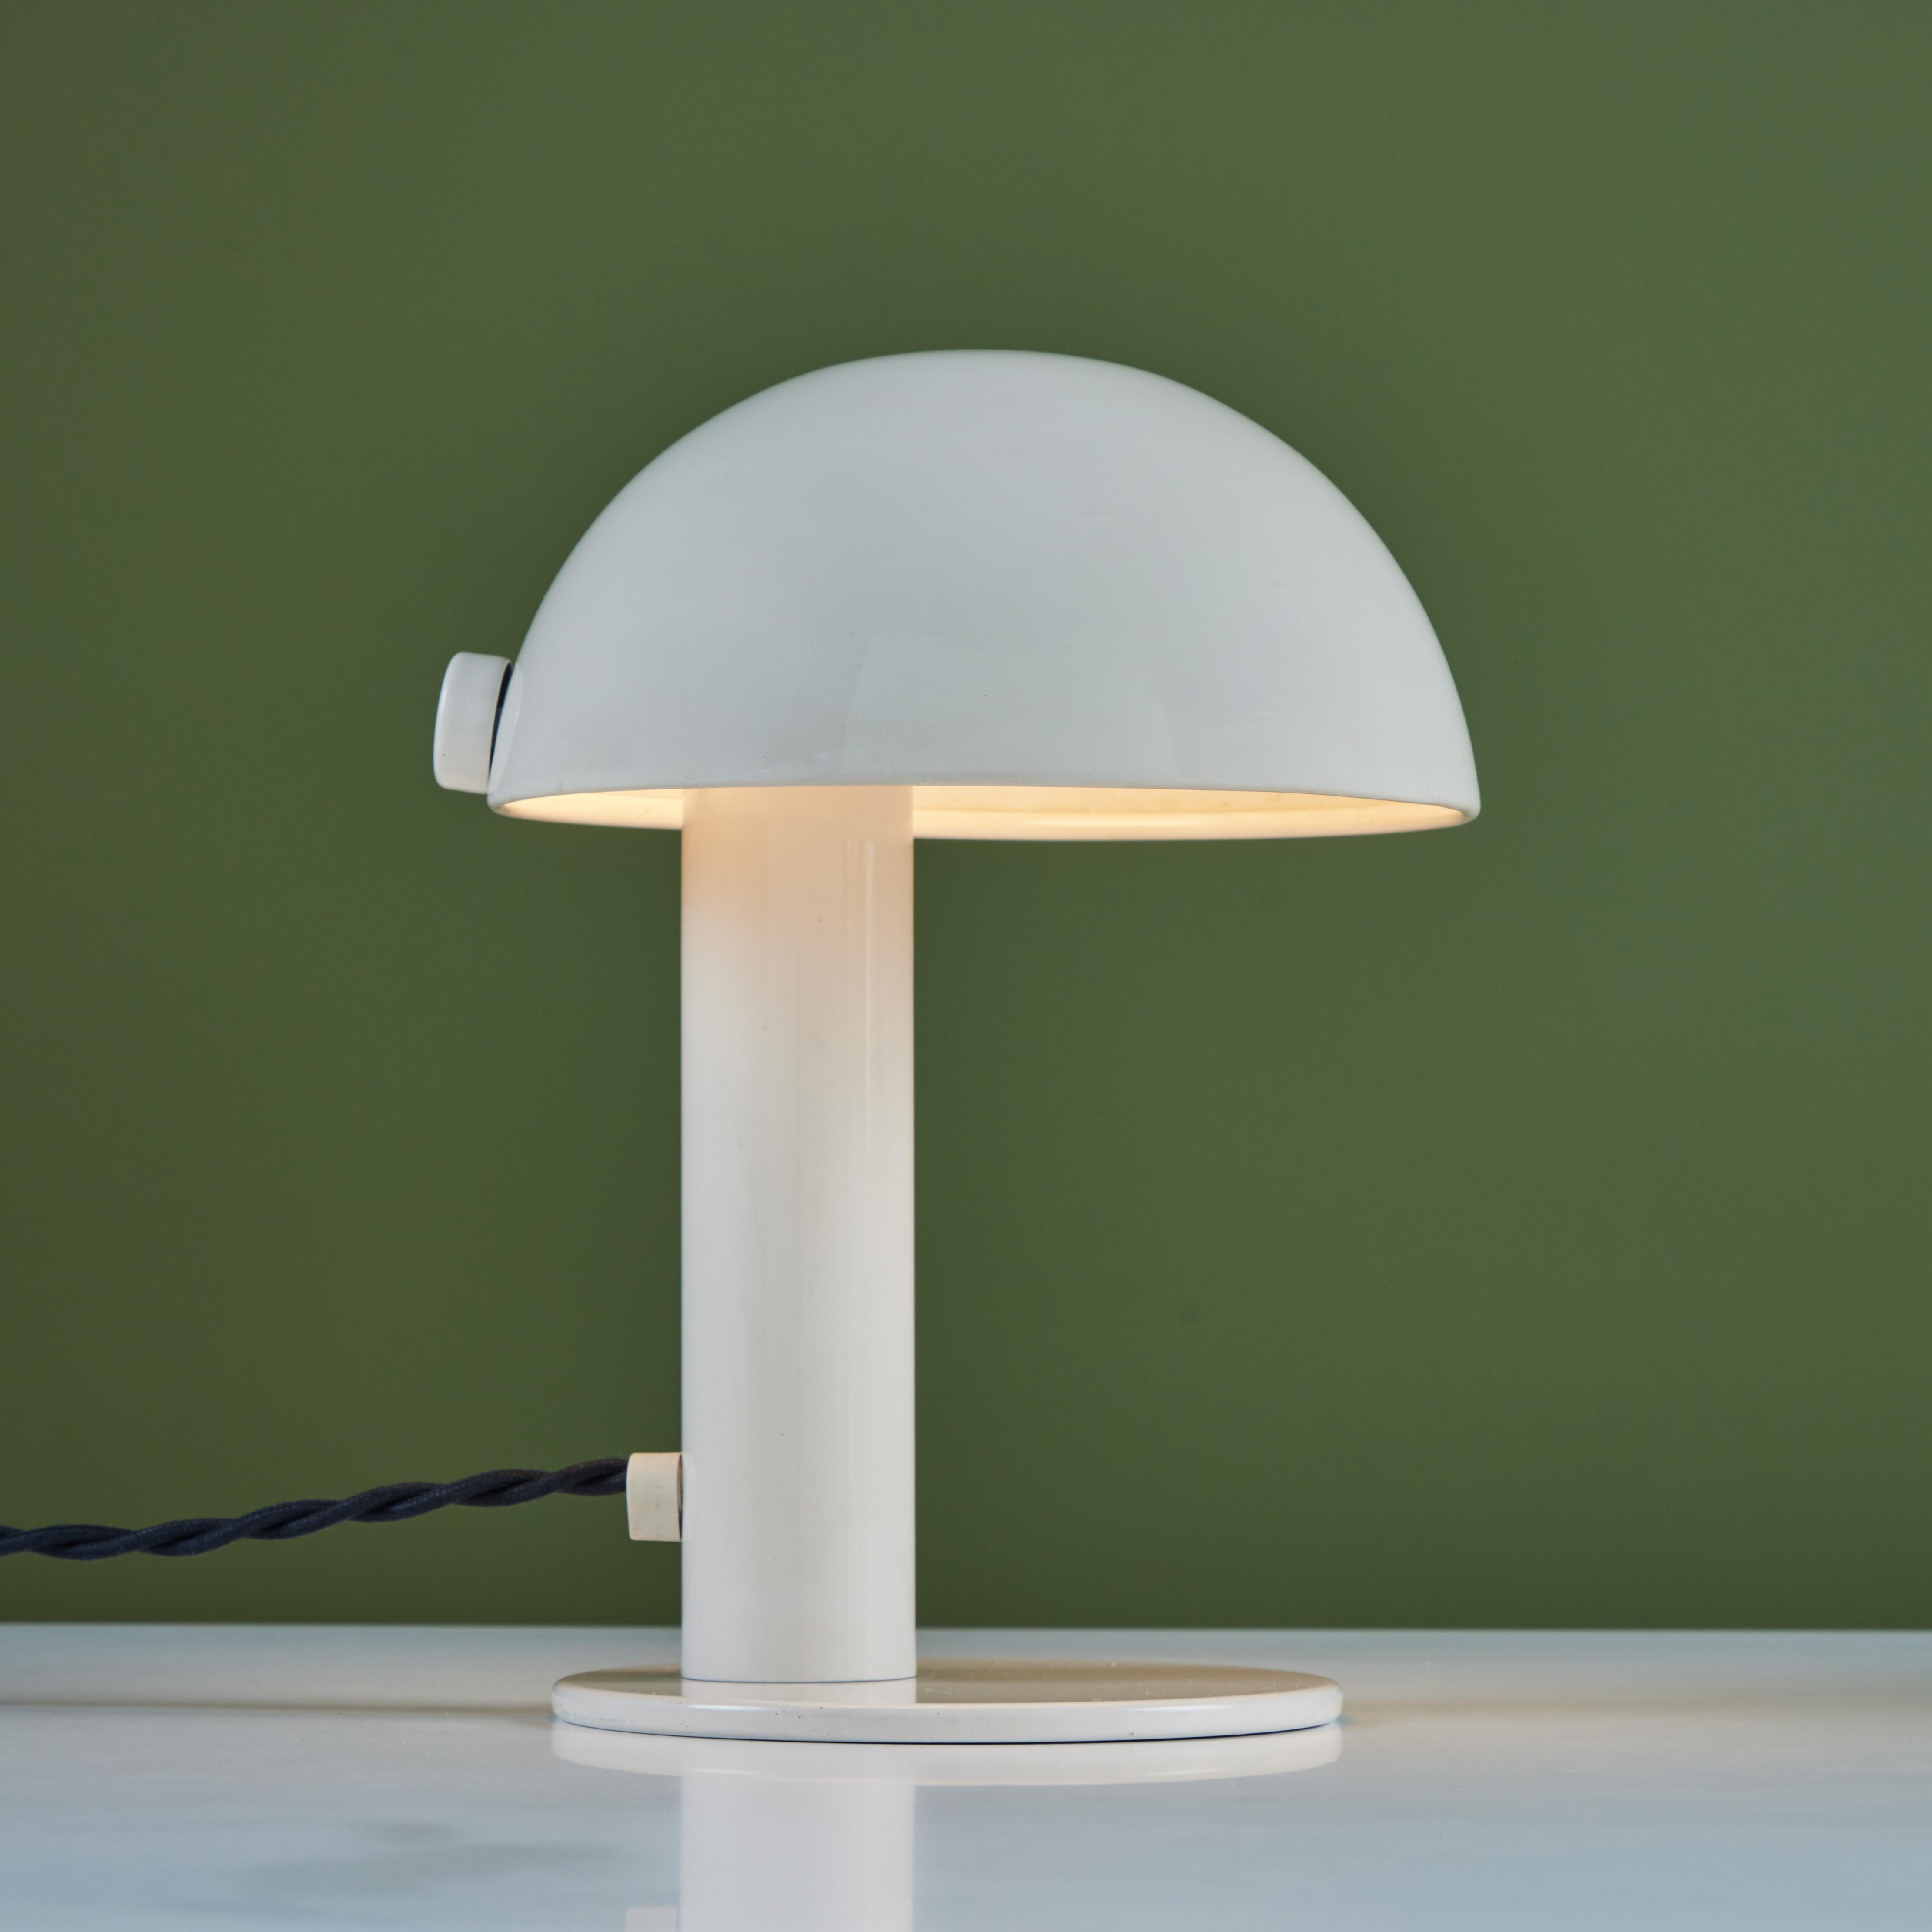 Petite lampe de table avec abat-jour en forme de champignon en métal émaillé crème. Une base ronde en crème assortie ancre la lampe avec sa tige tubulaire.

Dimensions
7